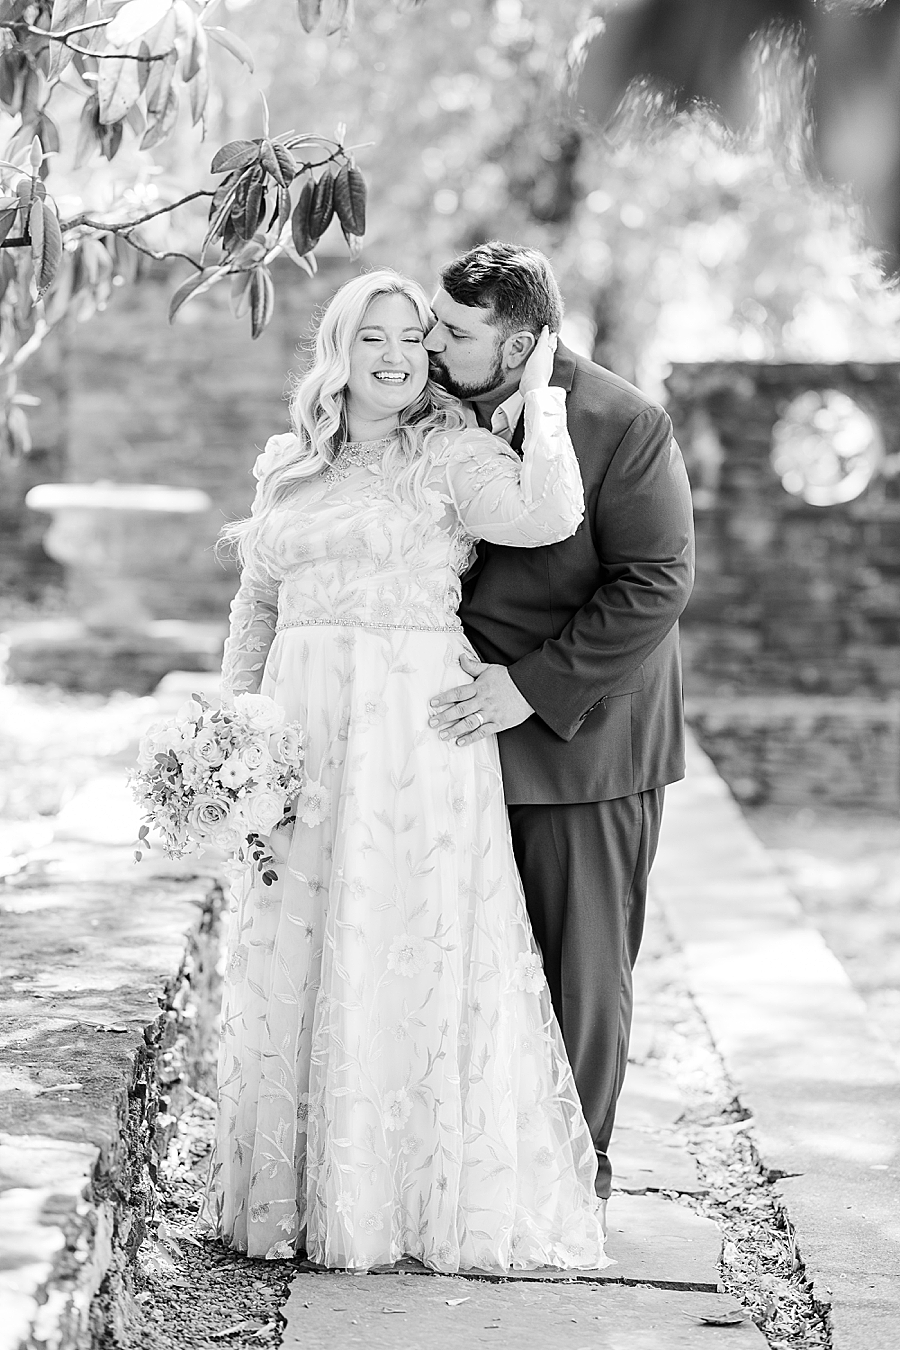 Groom kisses bride's cheek at Knoxville Botanical Gardens Wedding by Amanda May Photos